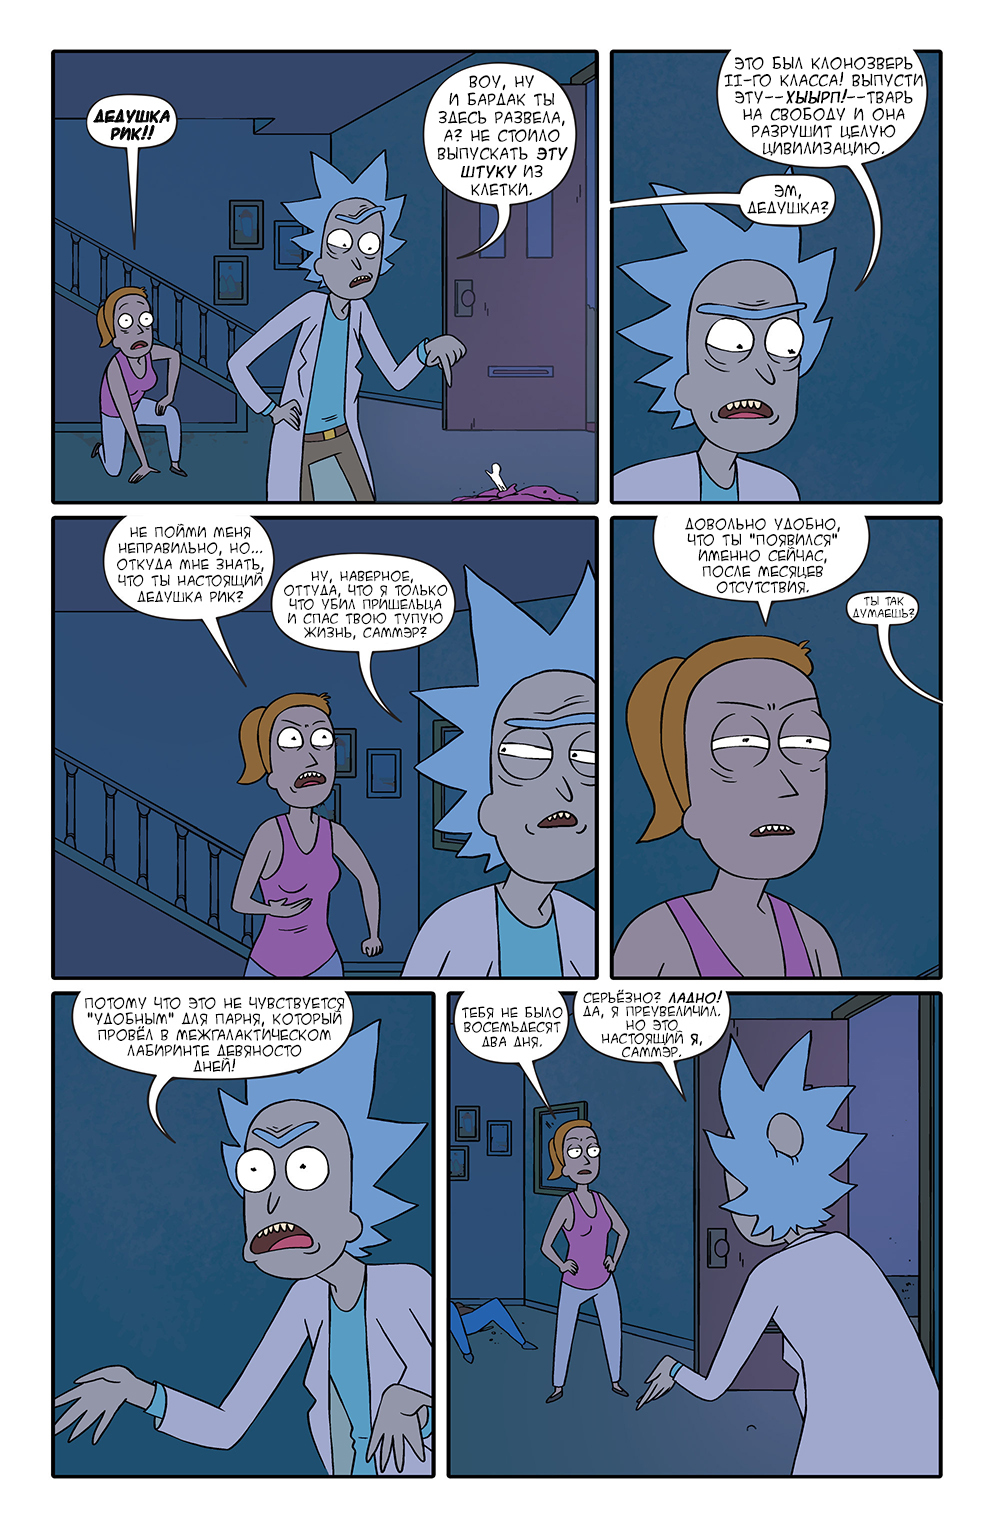 Rick and Morty #3 - Longpost, Rick and Morty, Translation, Comics, My